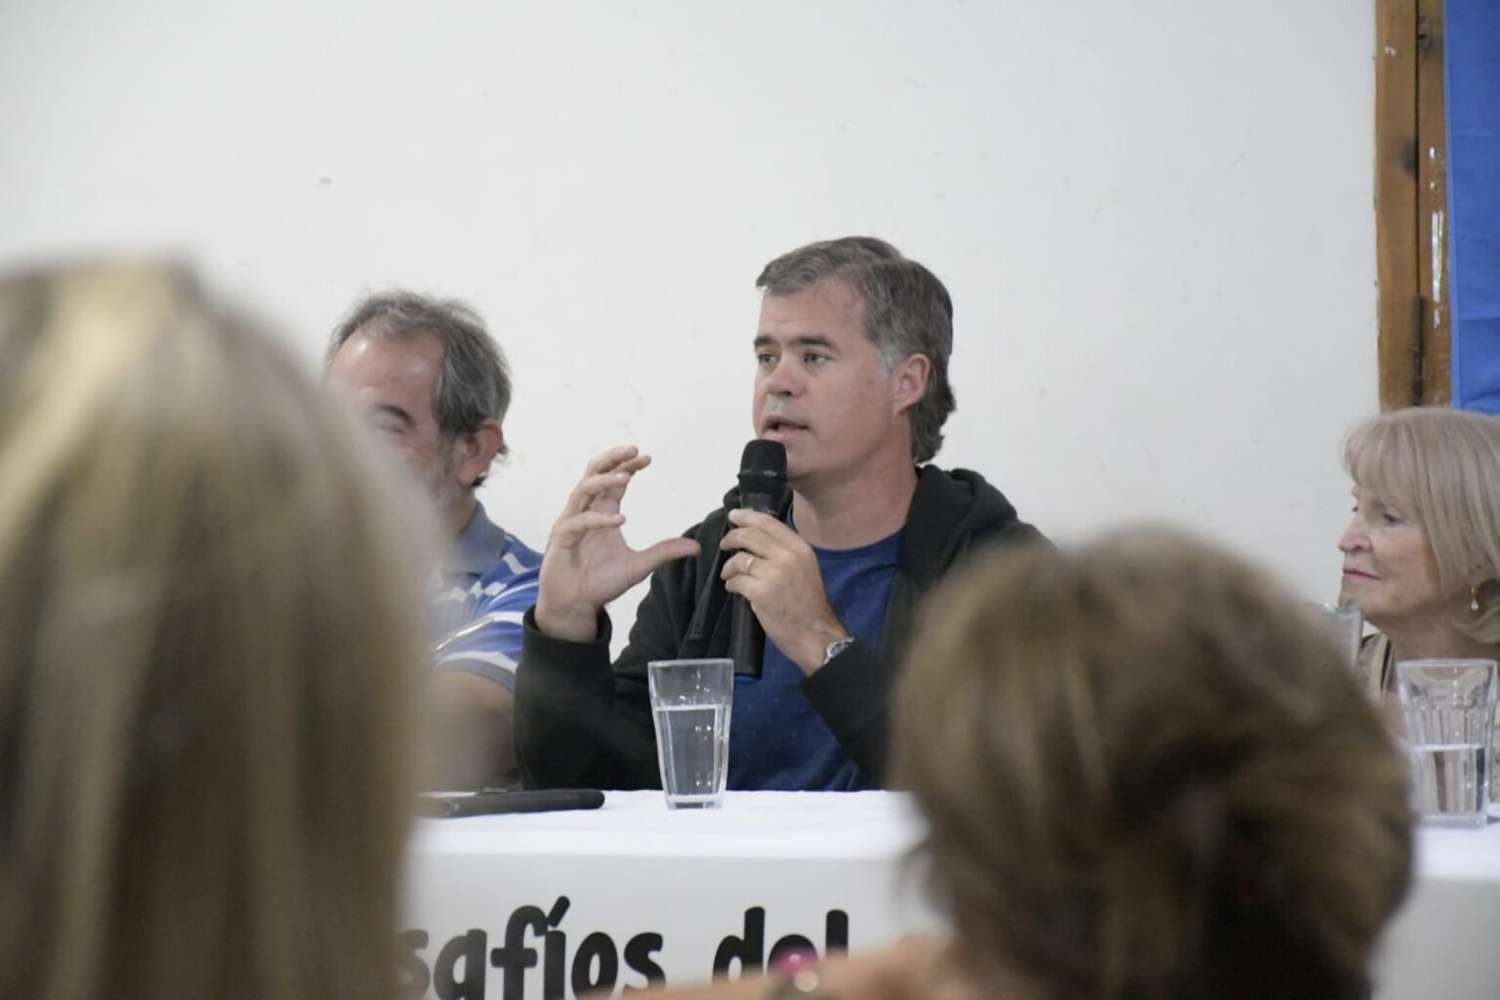 Piaggio participó de un encuentro en Paraná: El sugestivo cartel que ¿anuncia sus intenciones políticas?